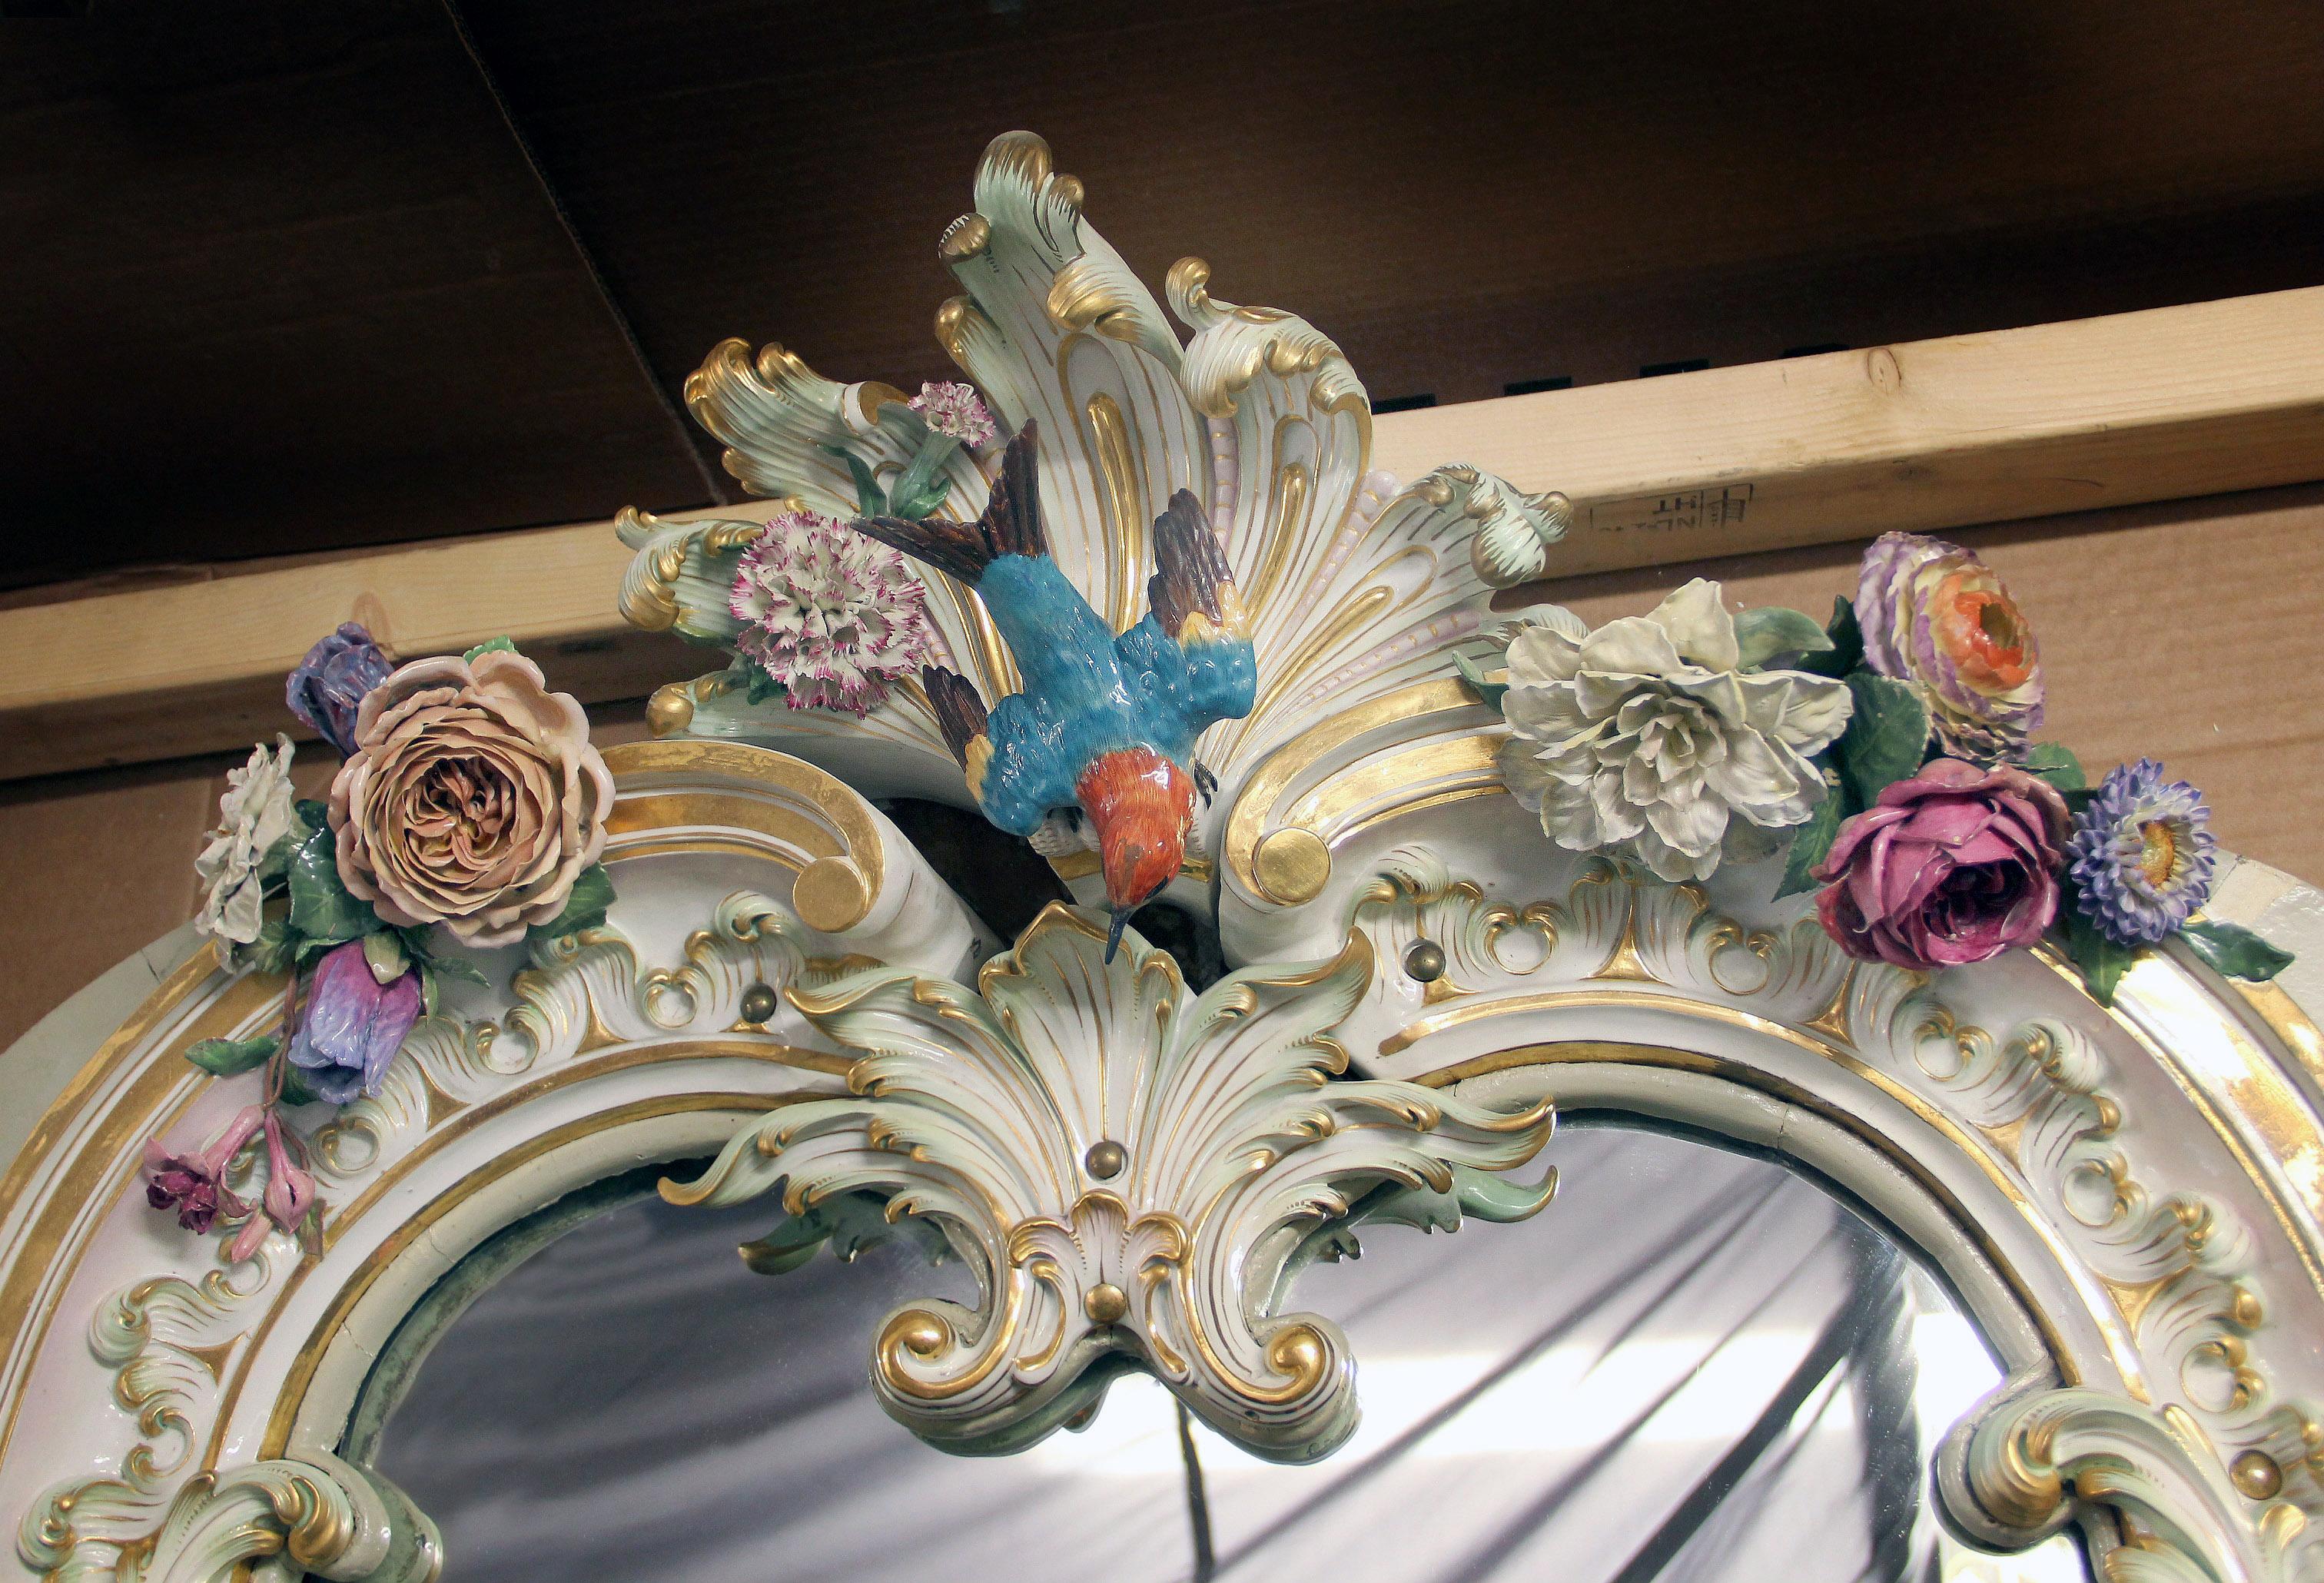 Miroir unique et monumental en porcelaine de Meissen (Allemagne) de la fin du XIXe siècle

Ce miroir palatial est composé d'environ 12 merveilleuses pièces de porcelaine travaillées individuellement à la main. La partie supérieure est centrée sur